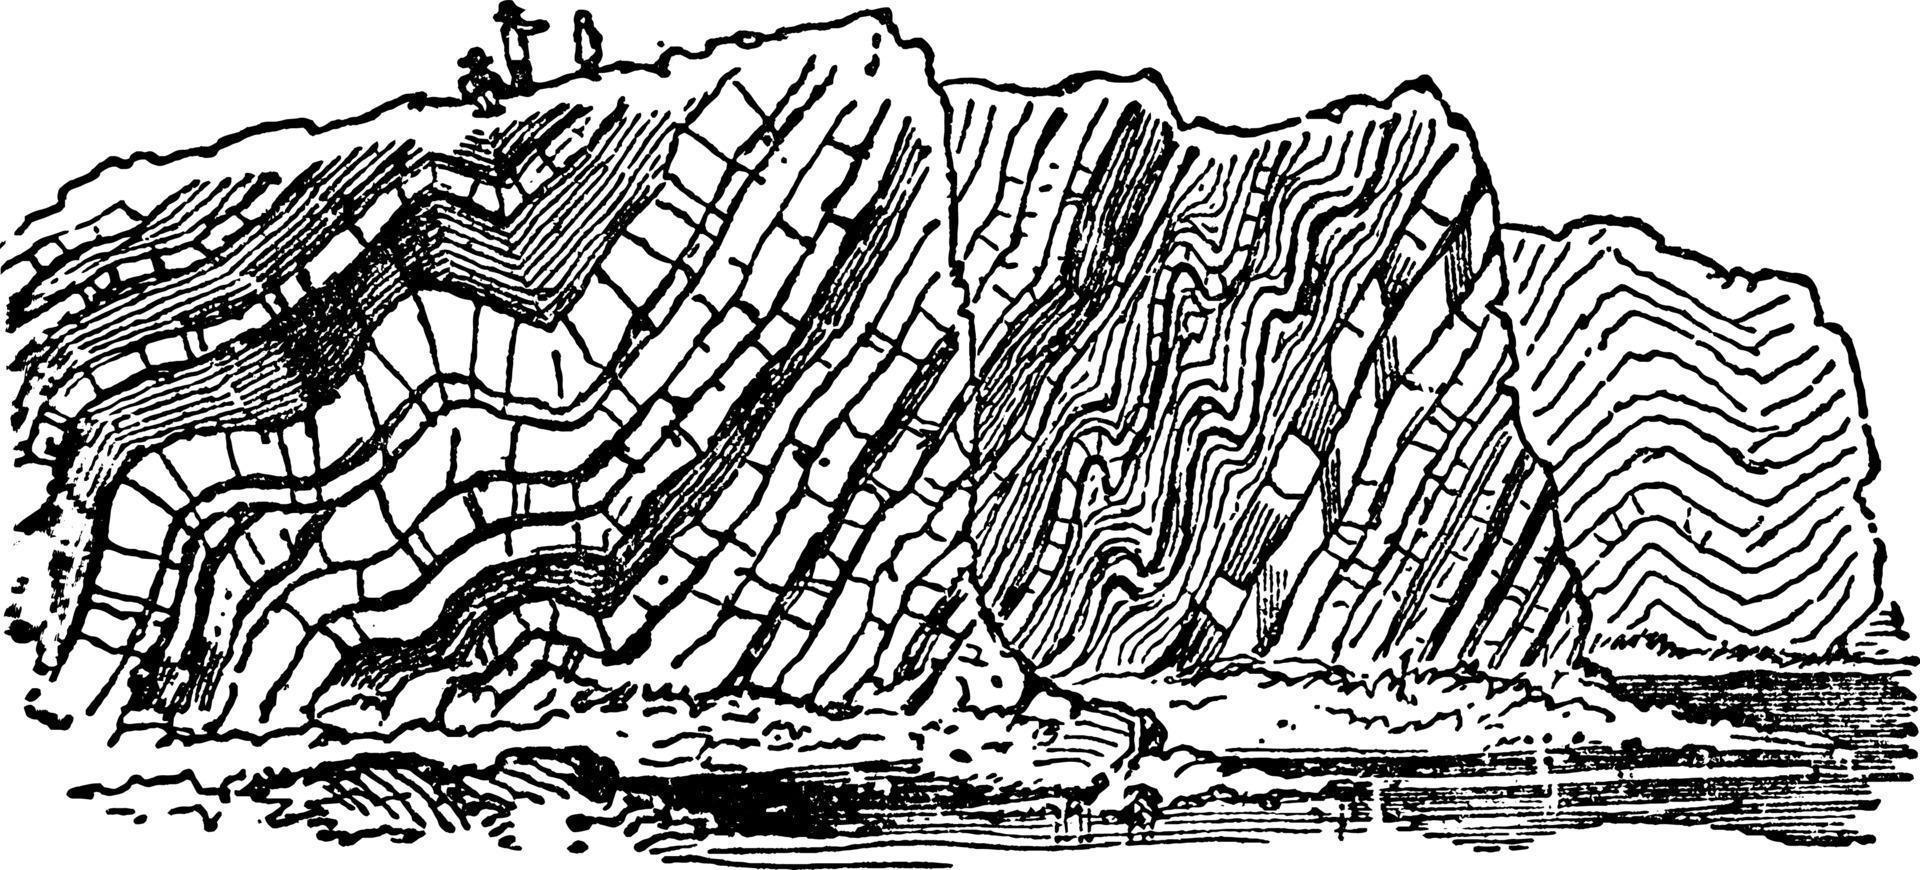 Contorted Rocks, vintage illustration. vector